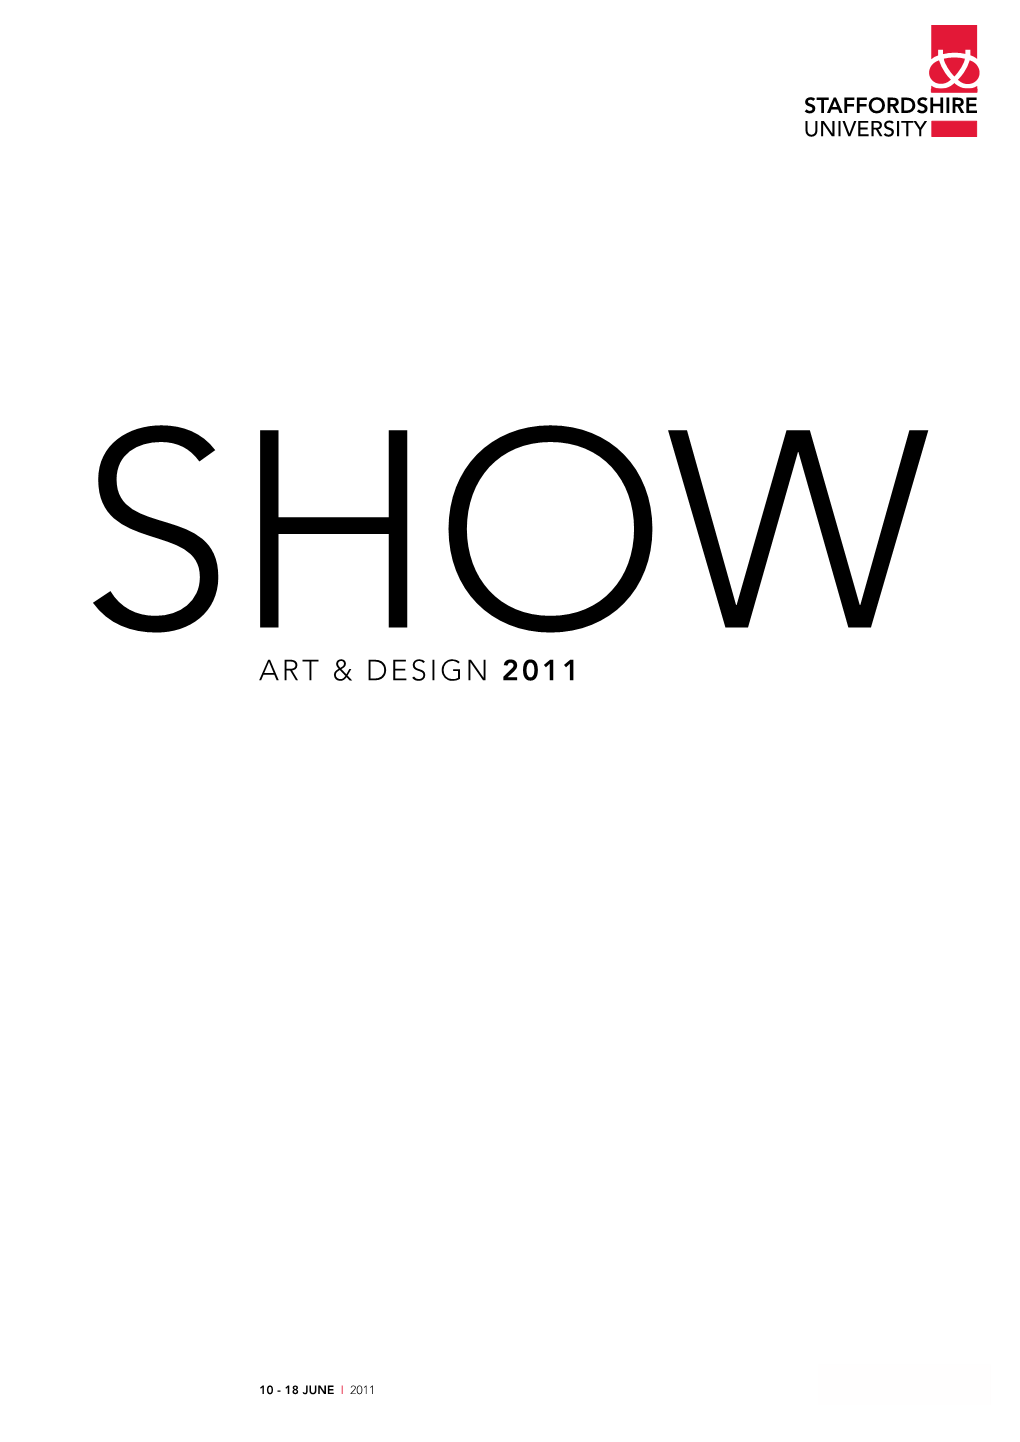 Art & Design 2011